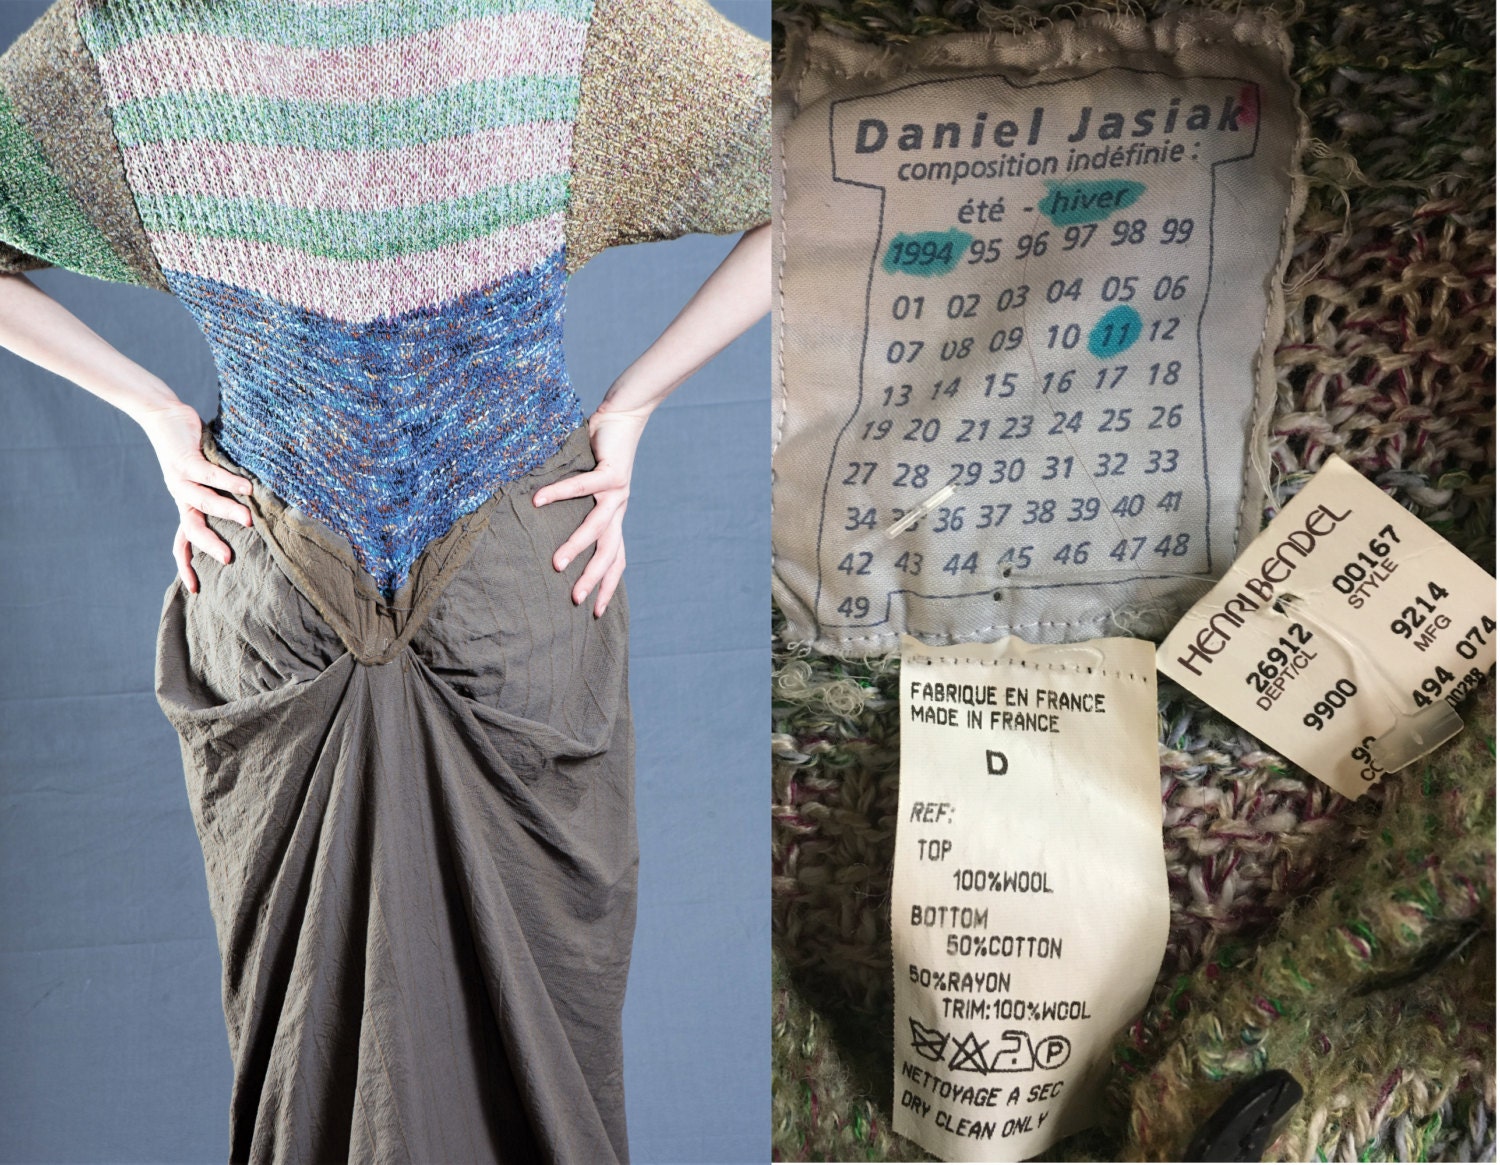 Designer Daniel Jasiak Dress Deadstock Vintage 1994 1st Etsy